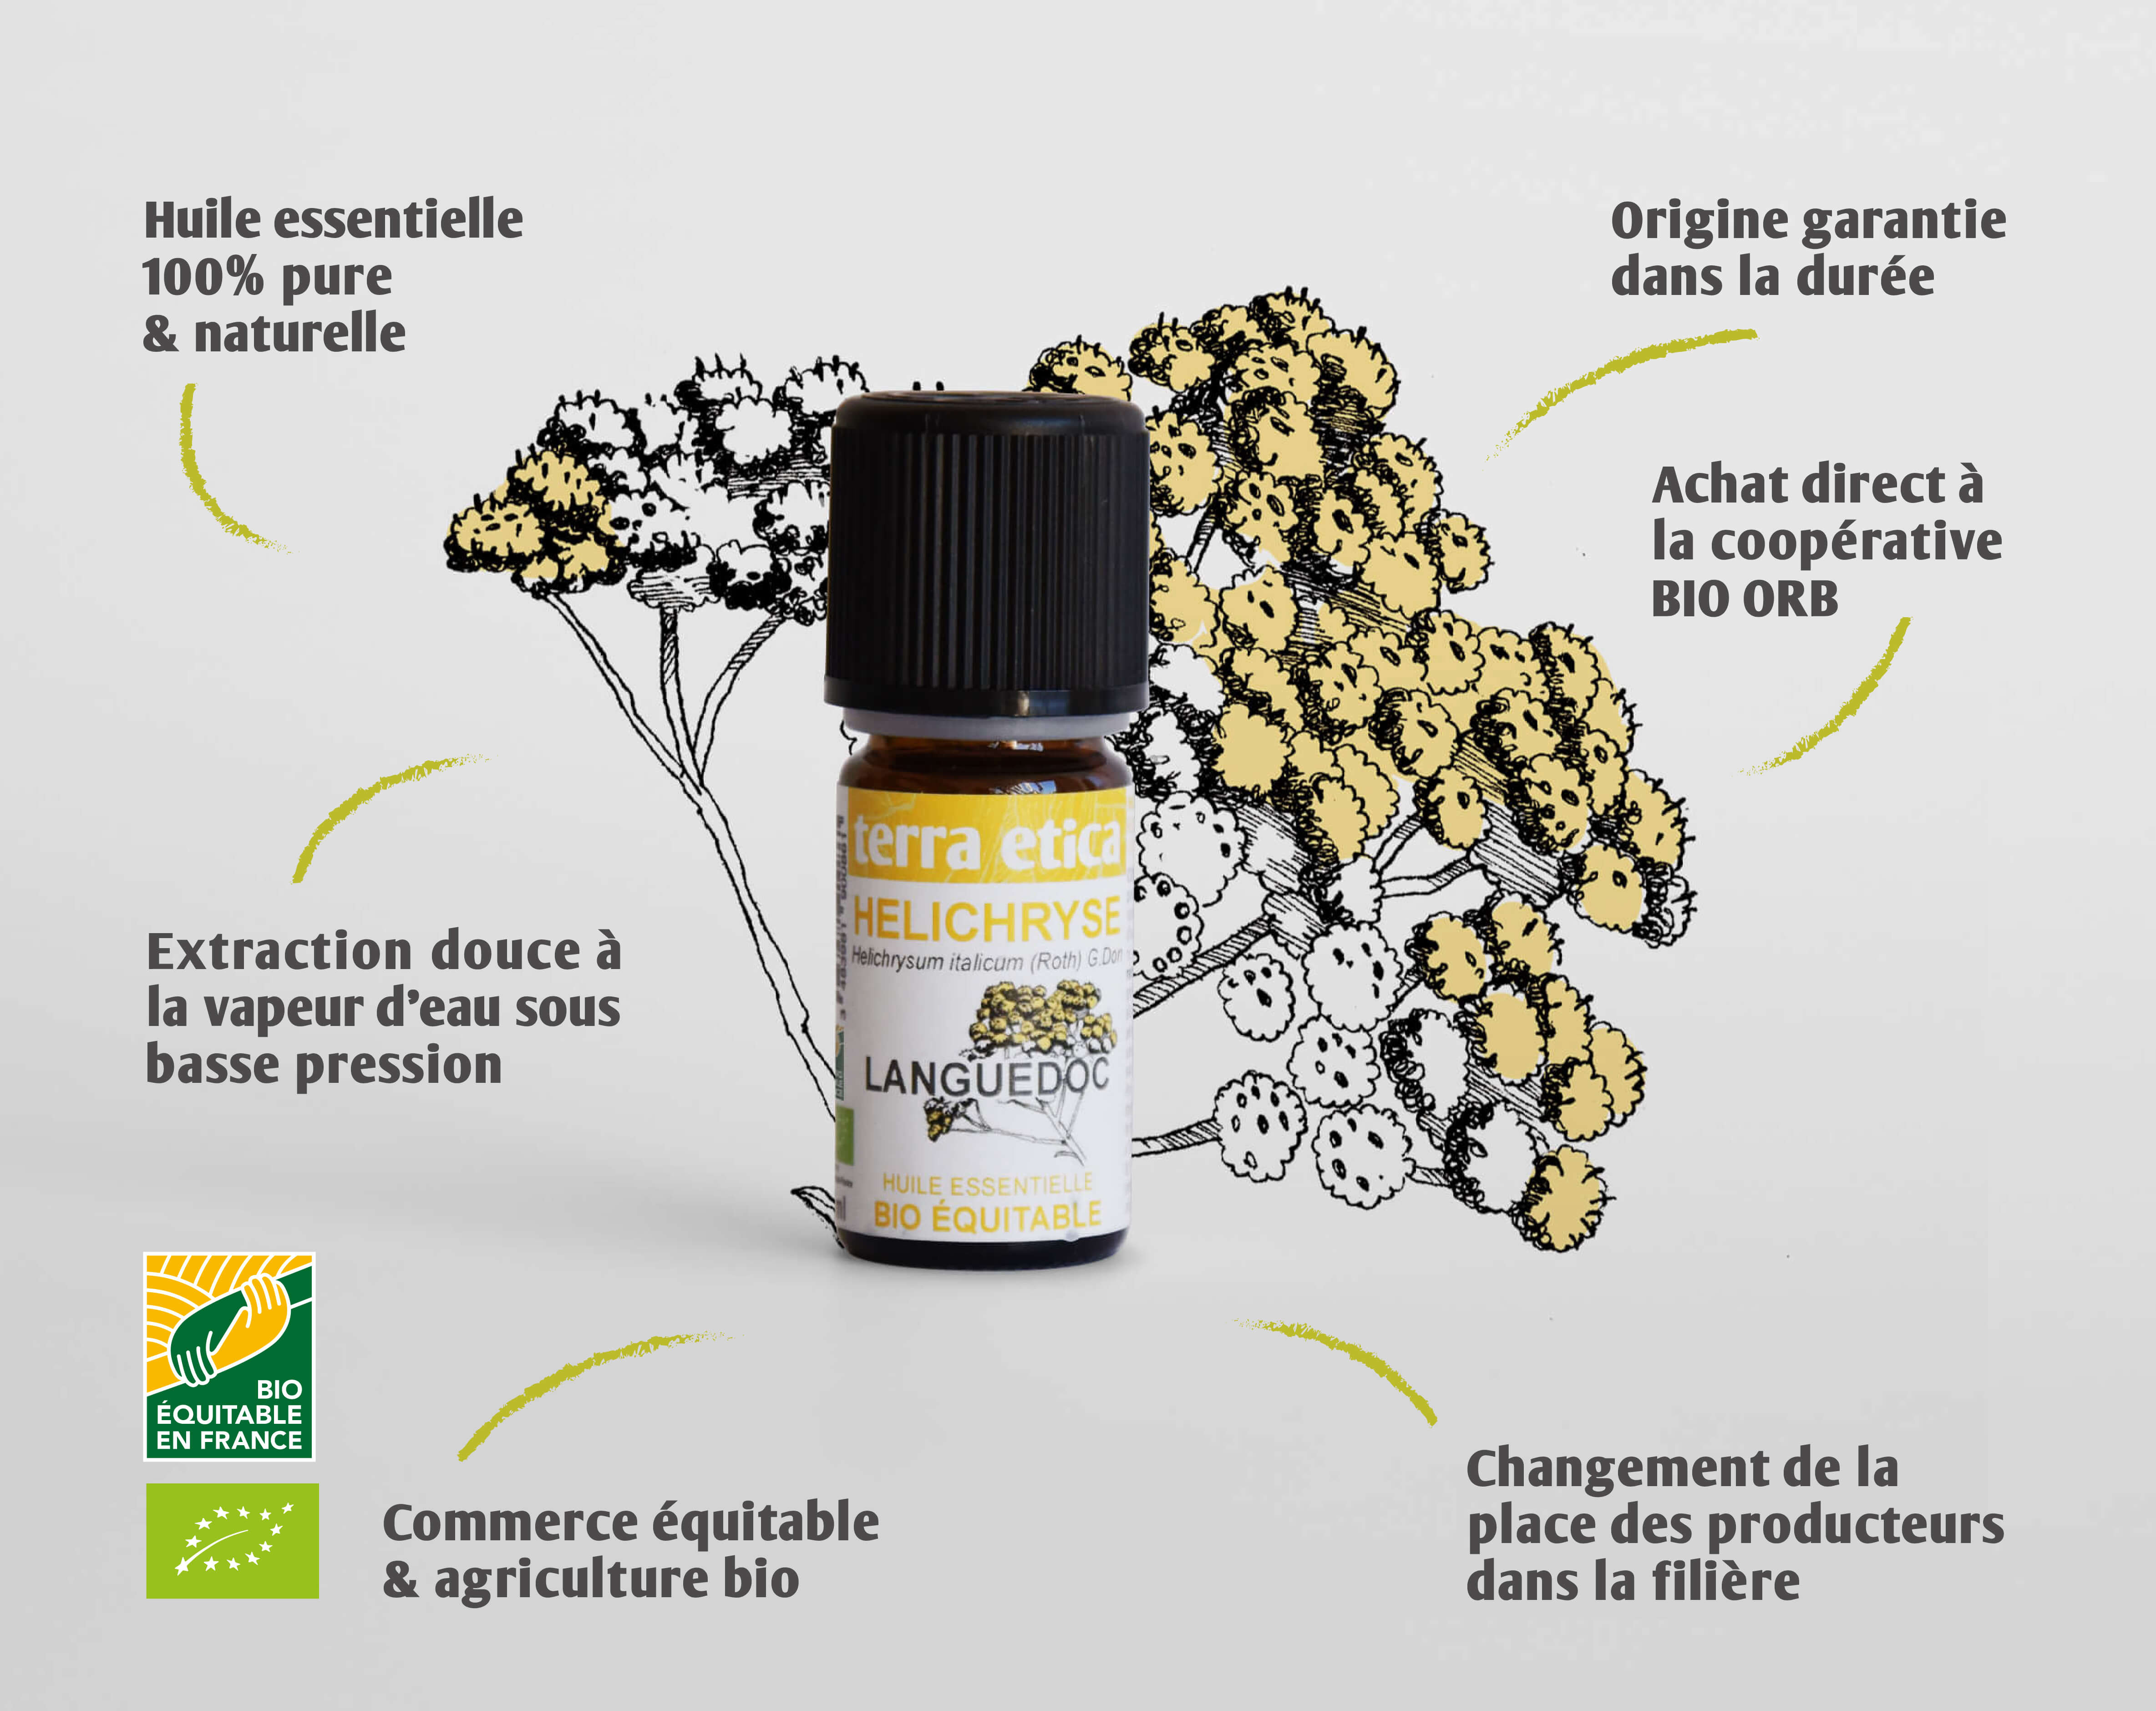 Terra Etica - Pure huile essentielle Hélichryse France biologique et équitable